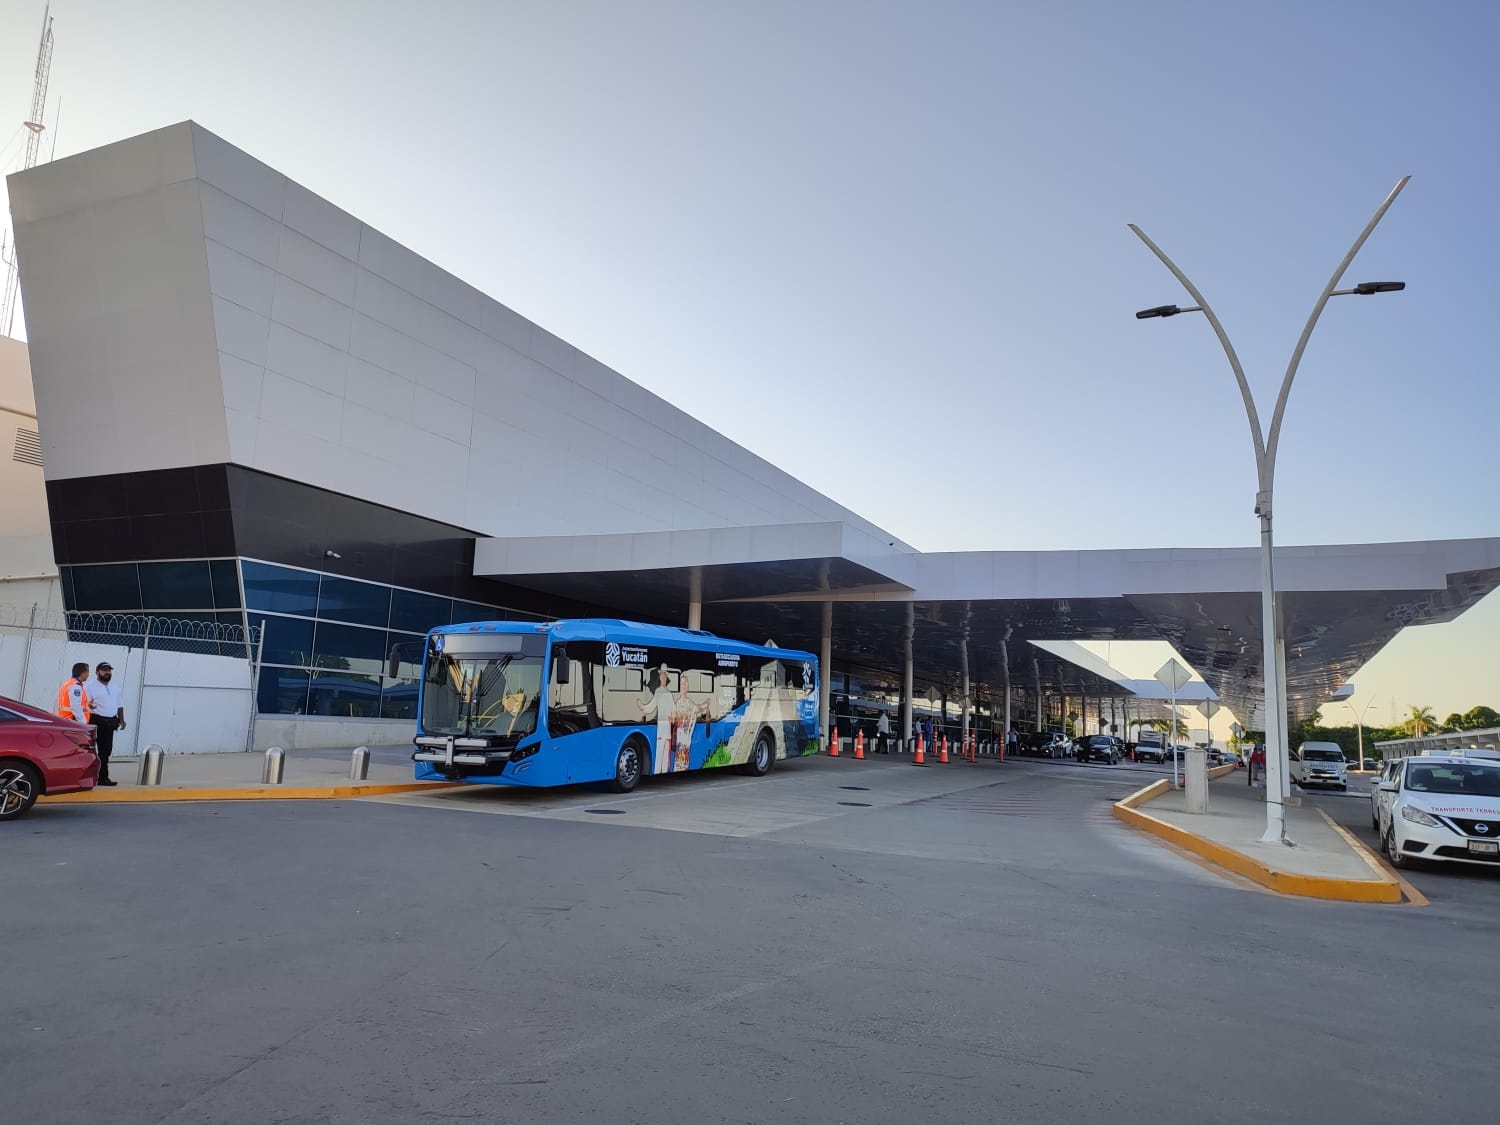 ¿Puede Uber entrar al aeropuerto de Mérida? Esto es lo que debes saber antes de abrir la aplicación